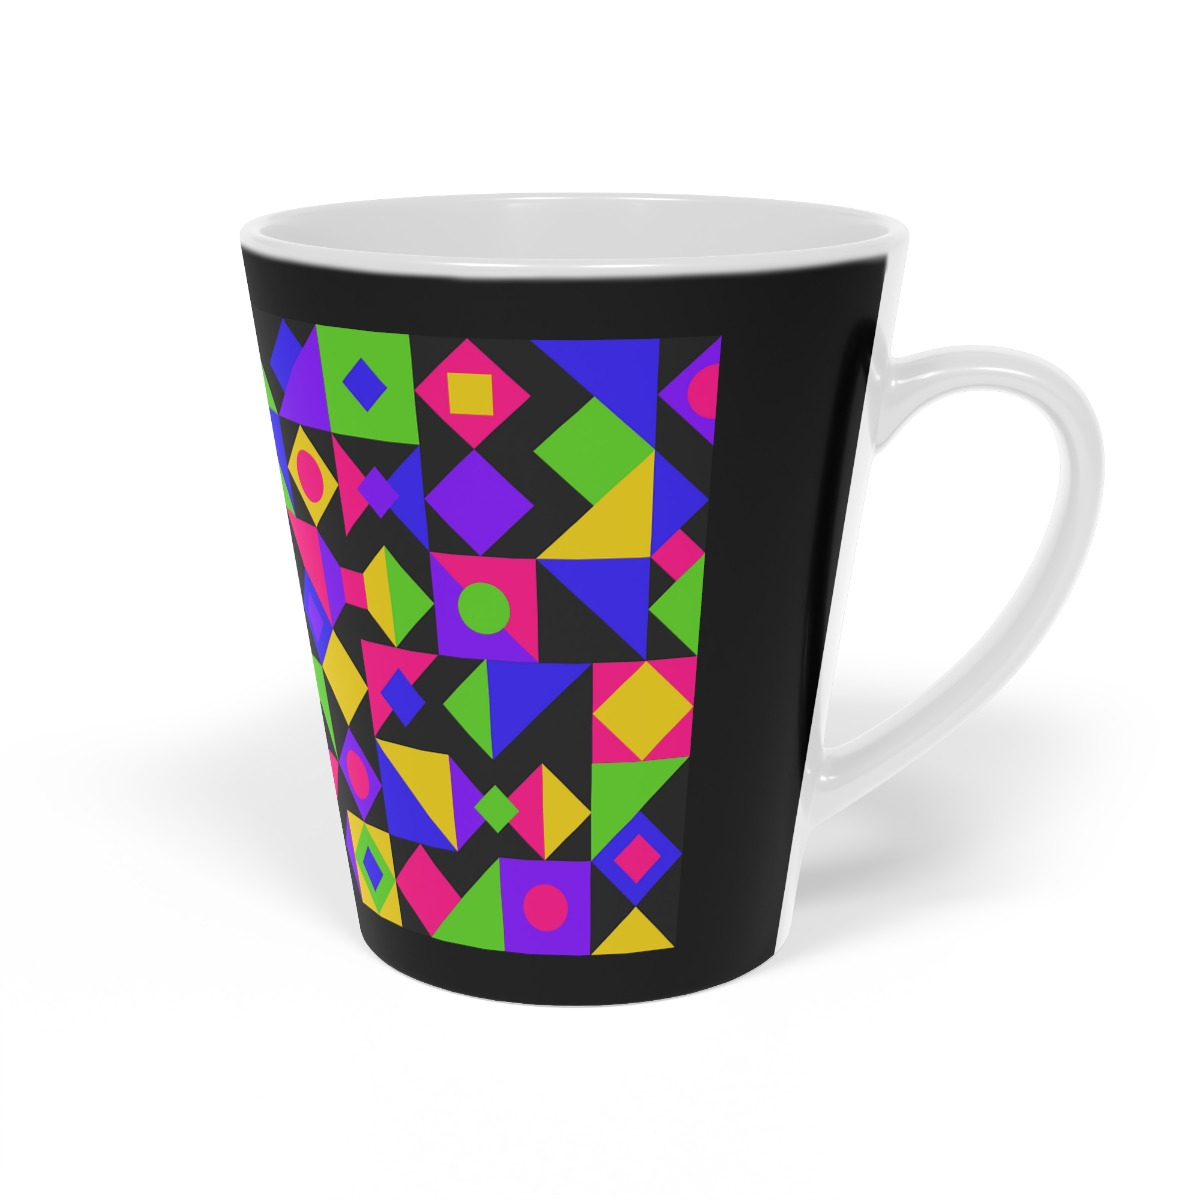 Elegant and Durable Ceramic Mug for Everyday Use - Latte Mug, 12oz product main image